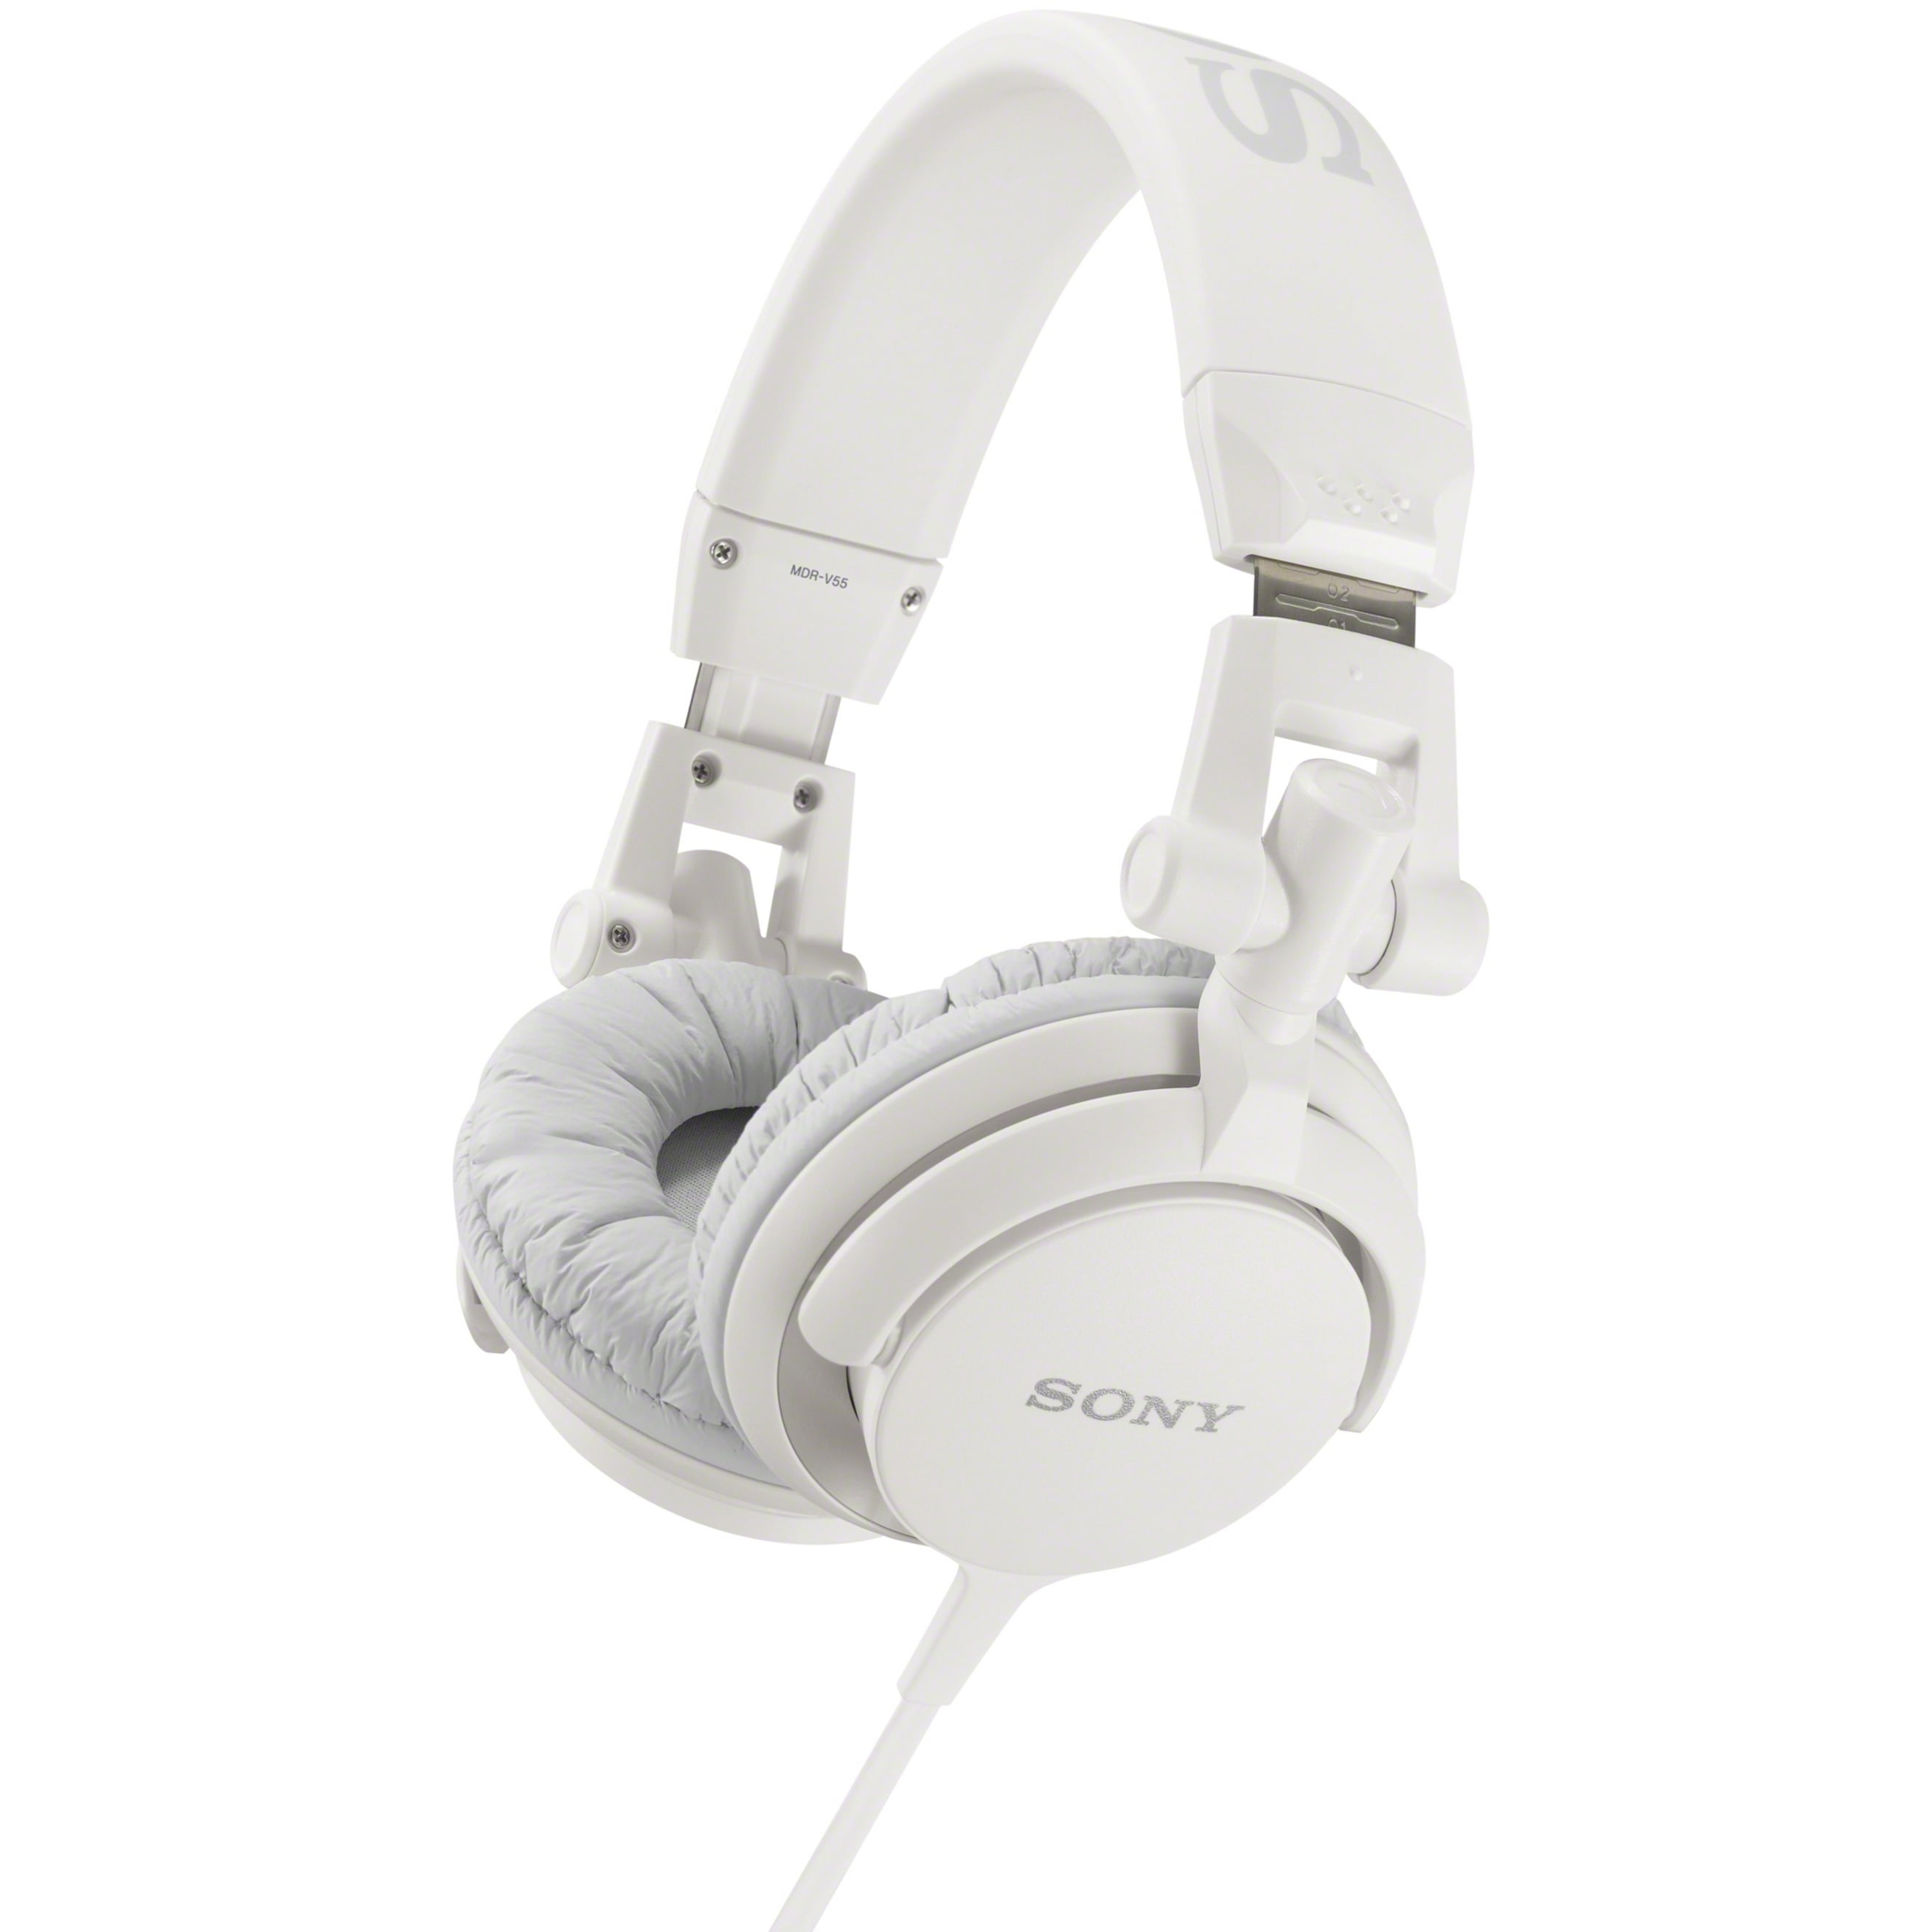 Sony Over-Ear Headphones White, MDR-V55/WHI Walmart.com